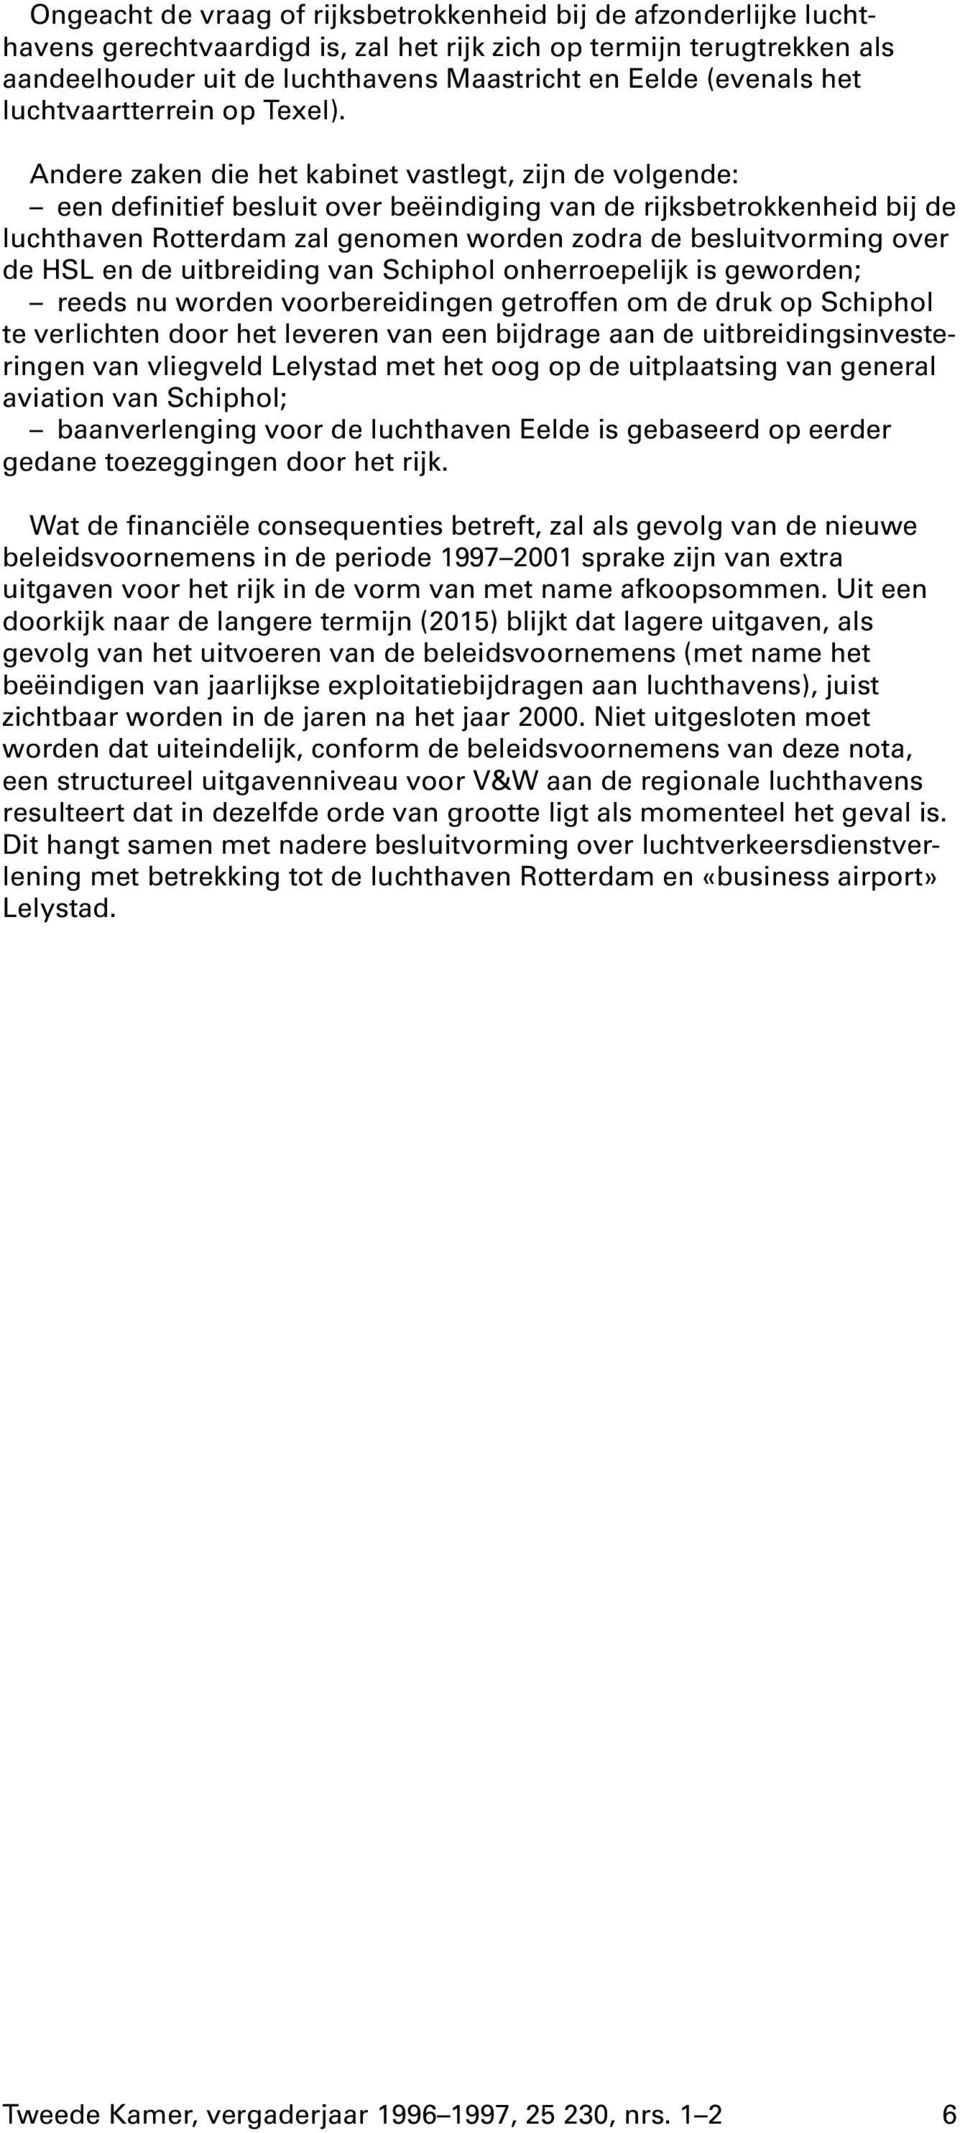 Andere zaken die het kabinet vastlegt, zijn de volgende: een definitief besluit over beëindiging van de rijksbetrokkenheid bij de luchthaven Rotterdam zal genomen worden zodra de besluitvorming over